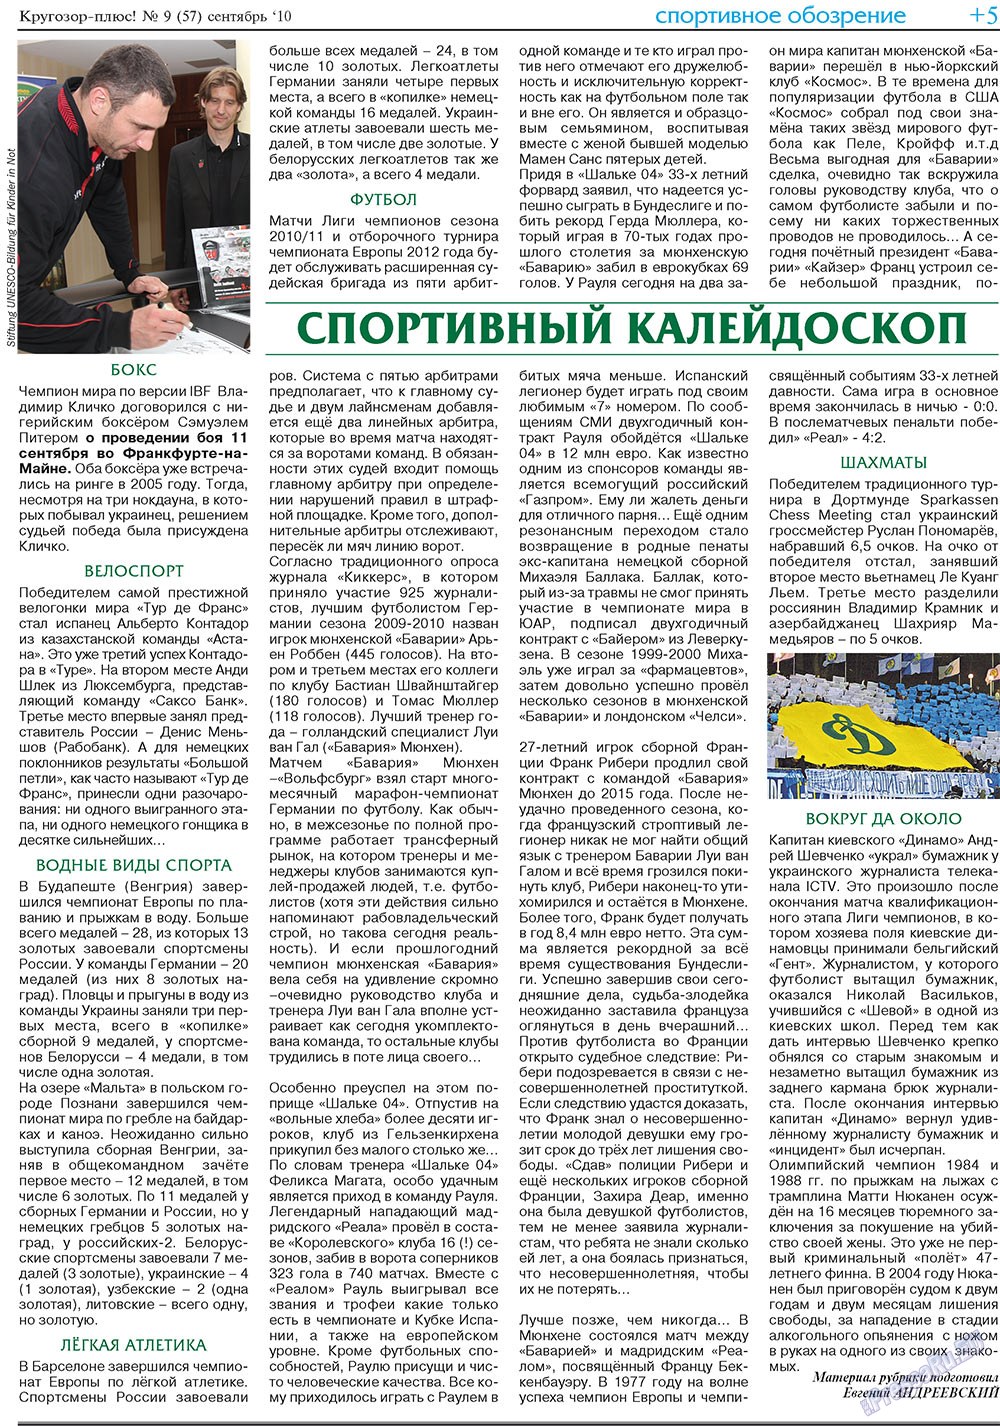 Кругозор плюс!, газета. 2010 №9 стр.21